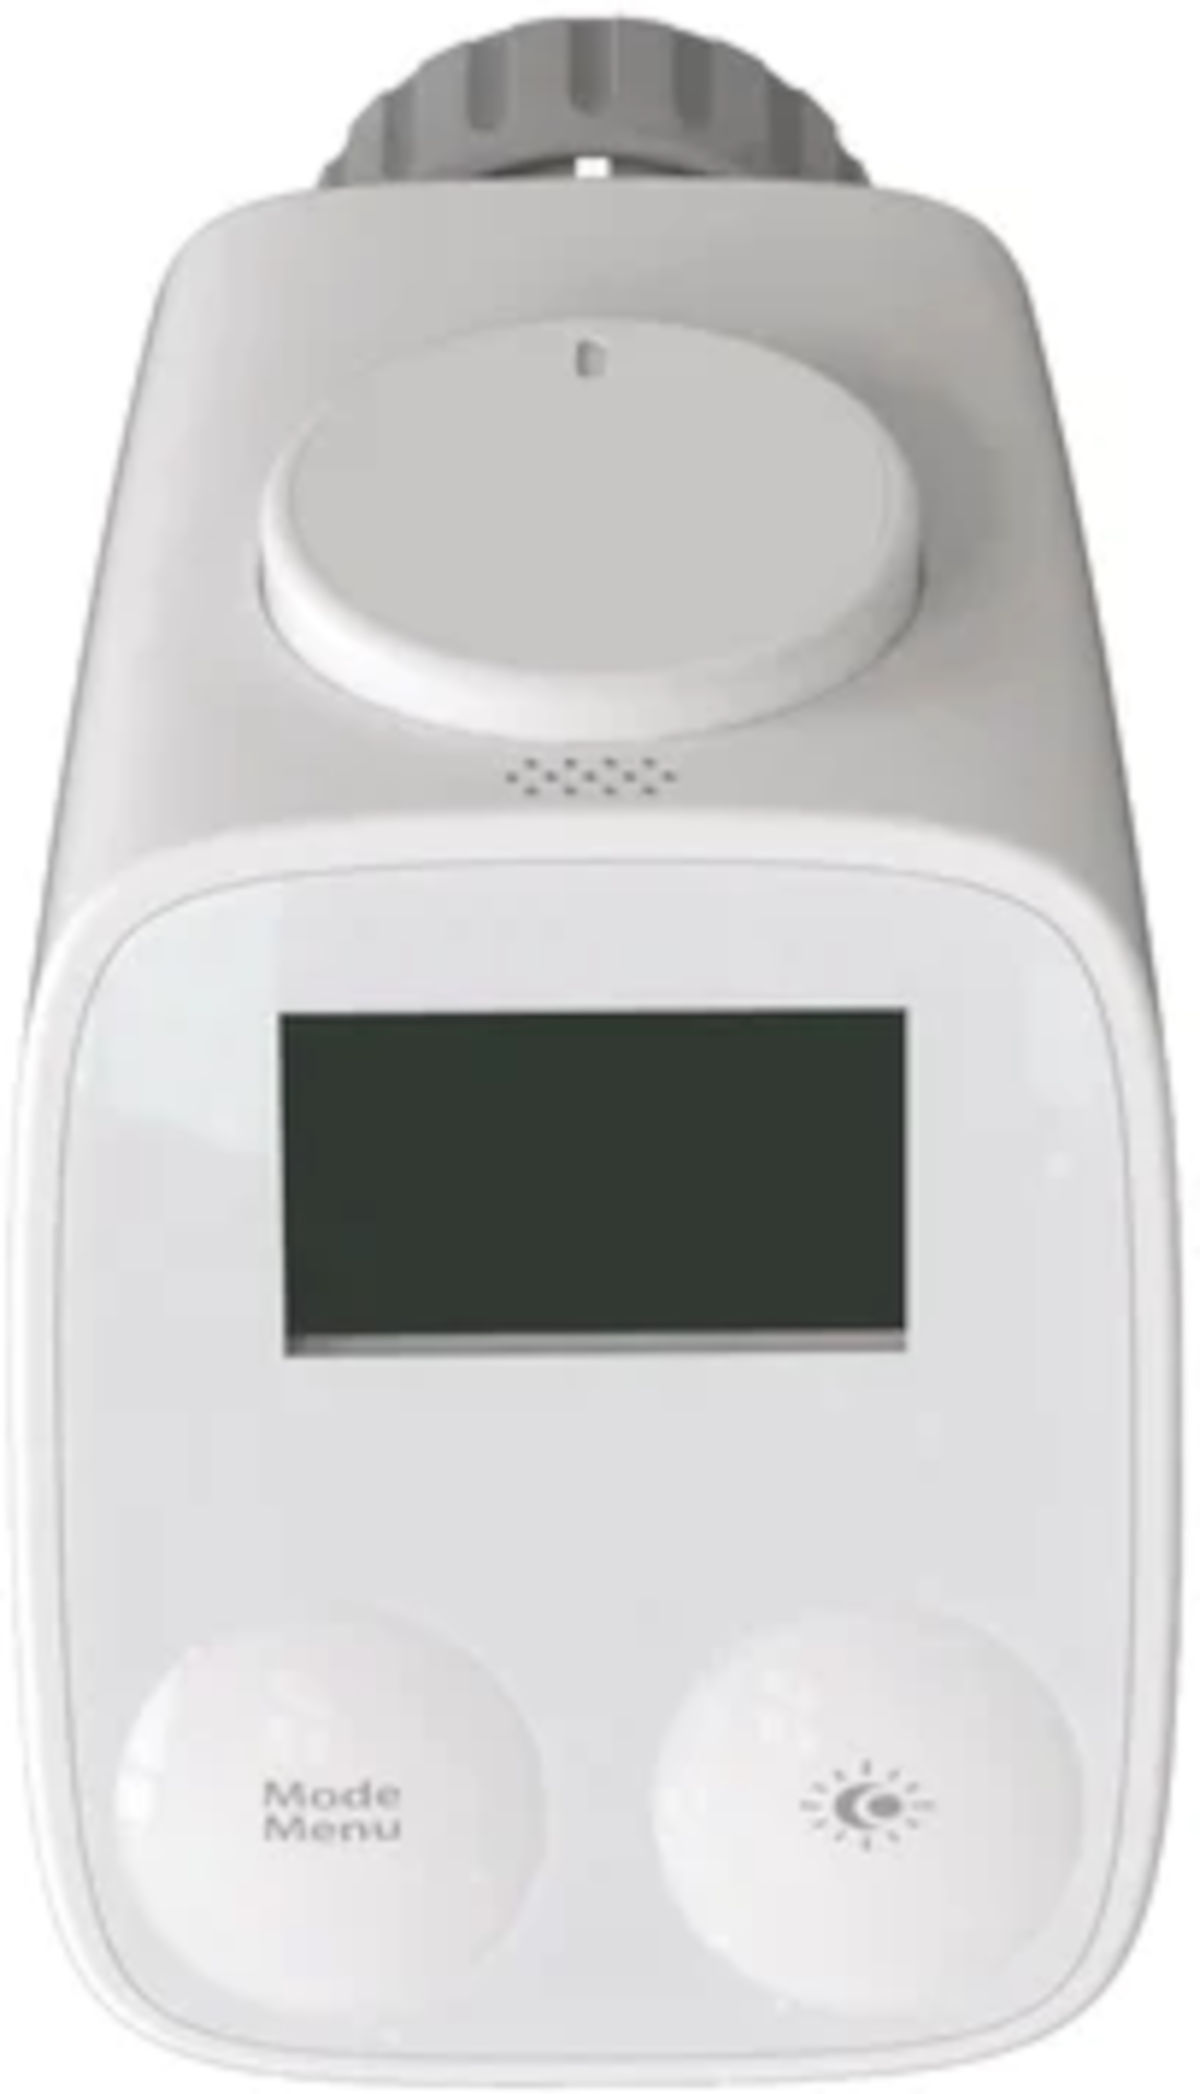 Wesmartify Smart Home Heizkörperthermostat, Frontansicht, vor weißem Hintergrund